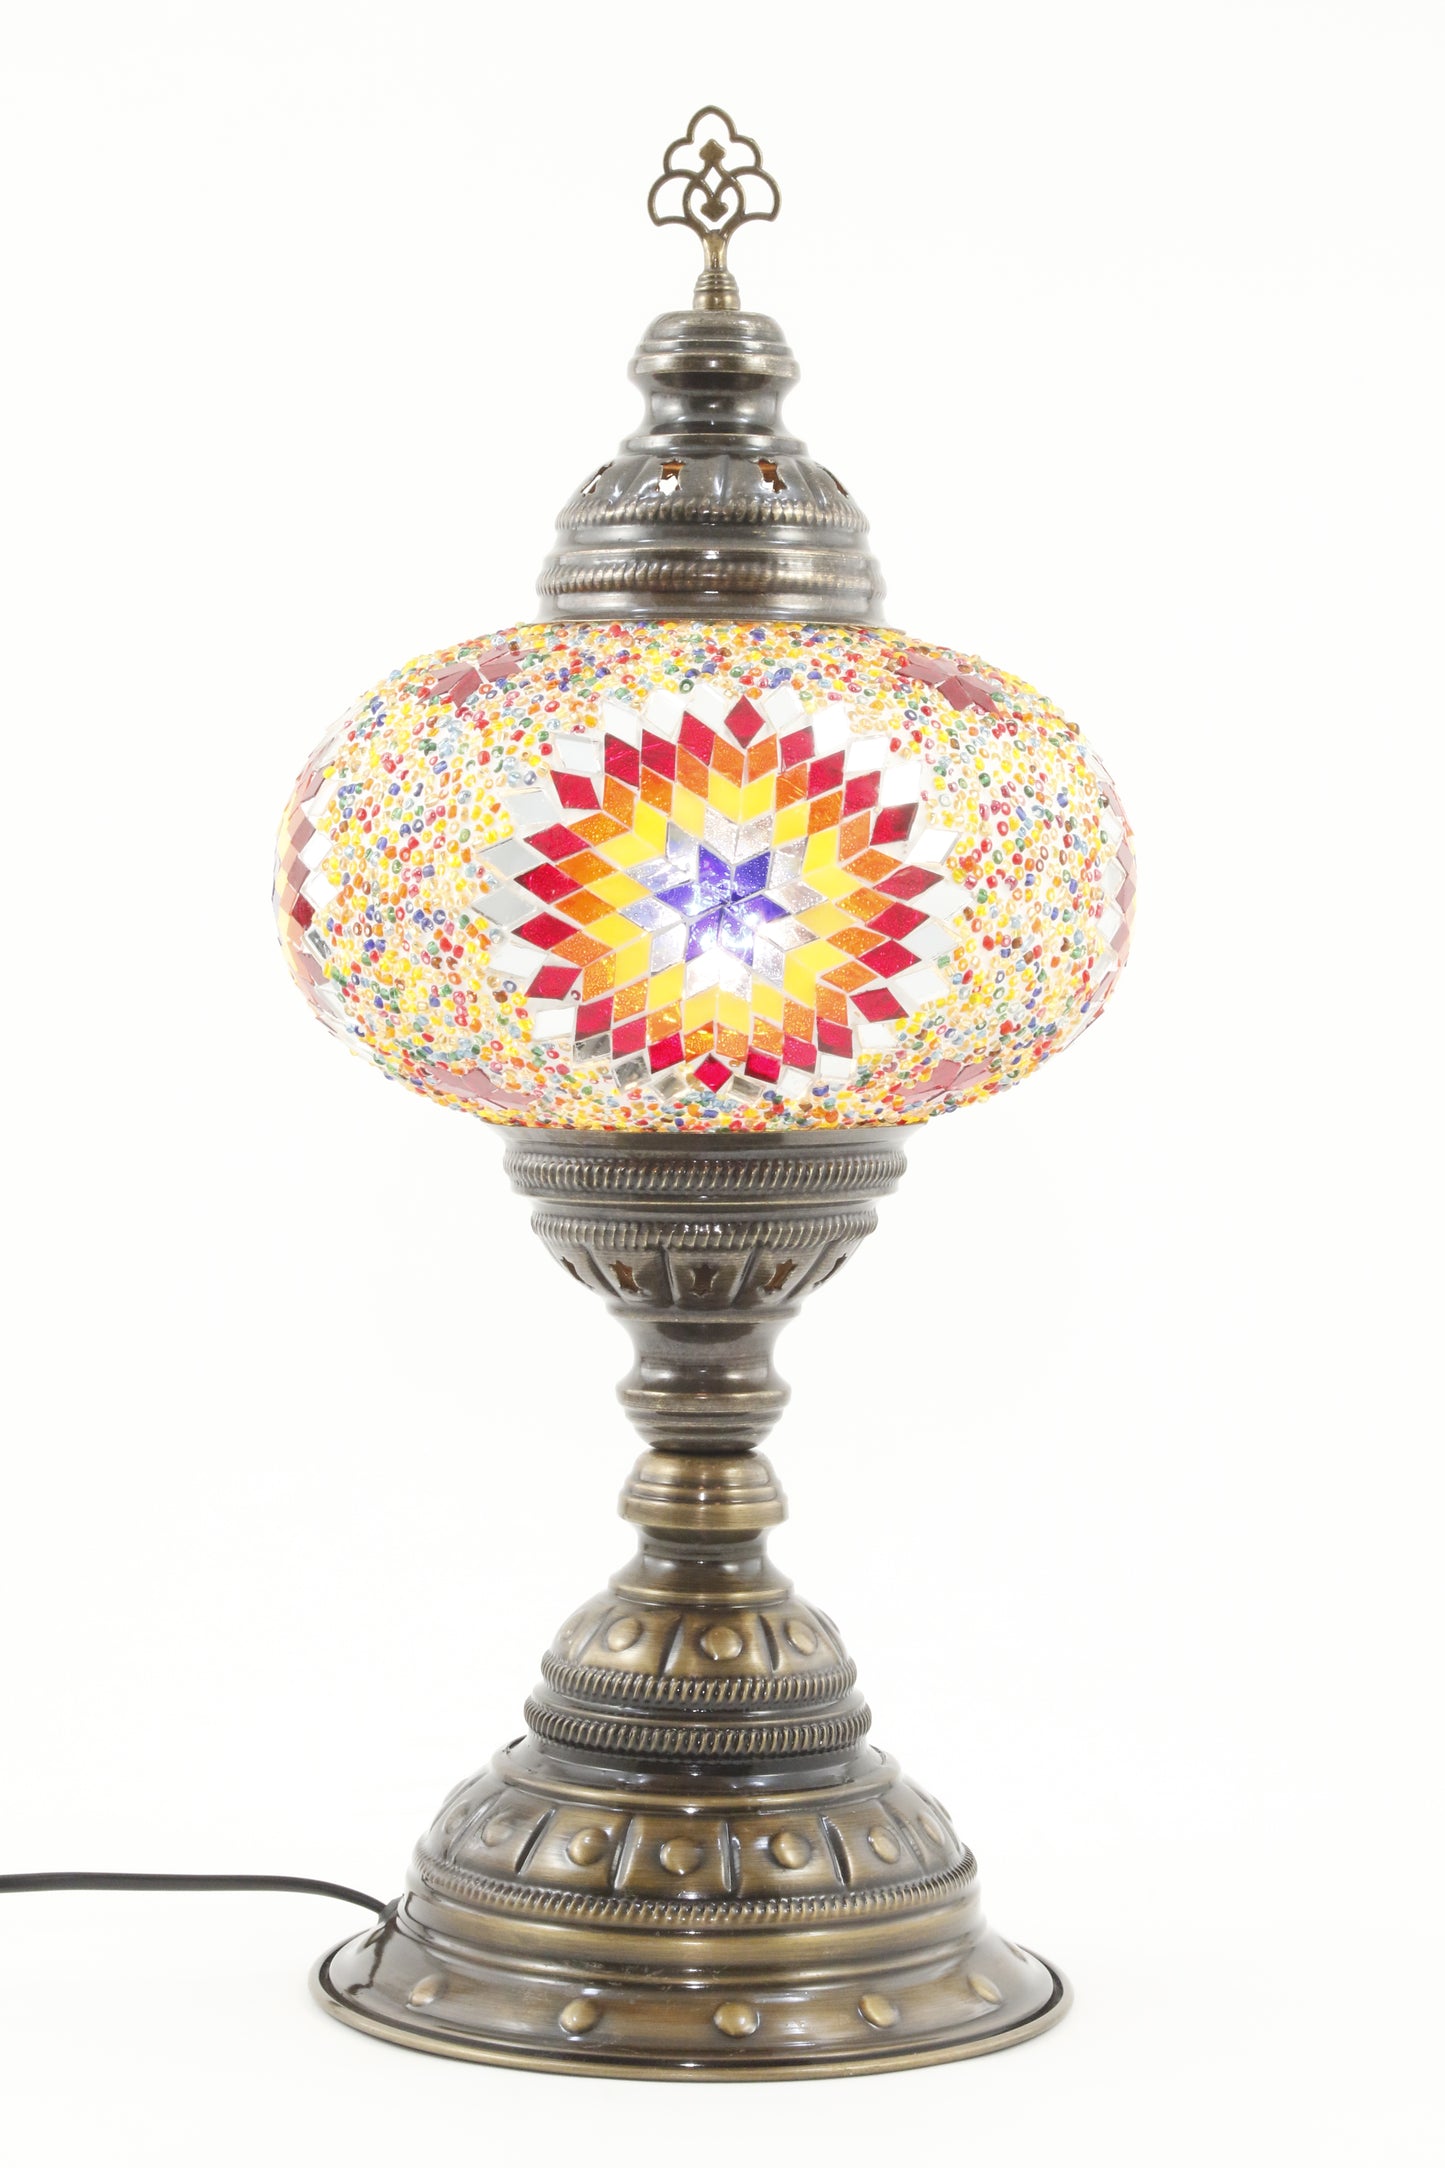 TURKISH MOSAIC TABLE LAMP MB4 RAINBOW 4-TURNED ON